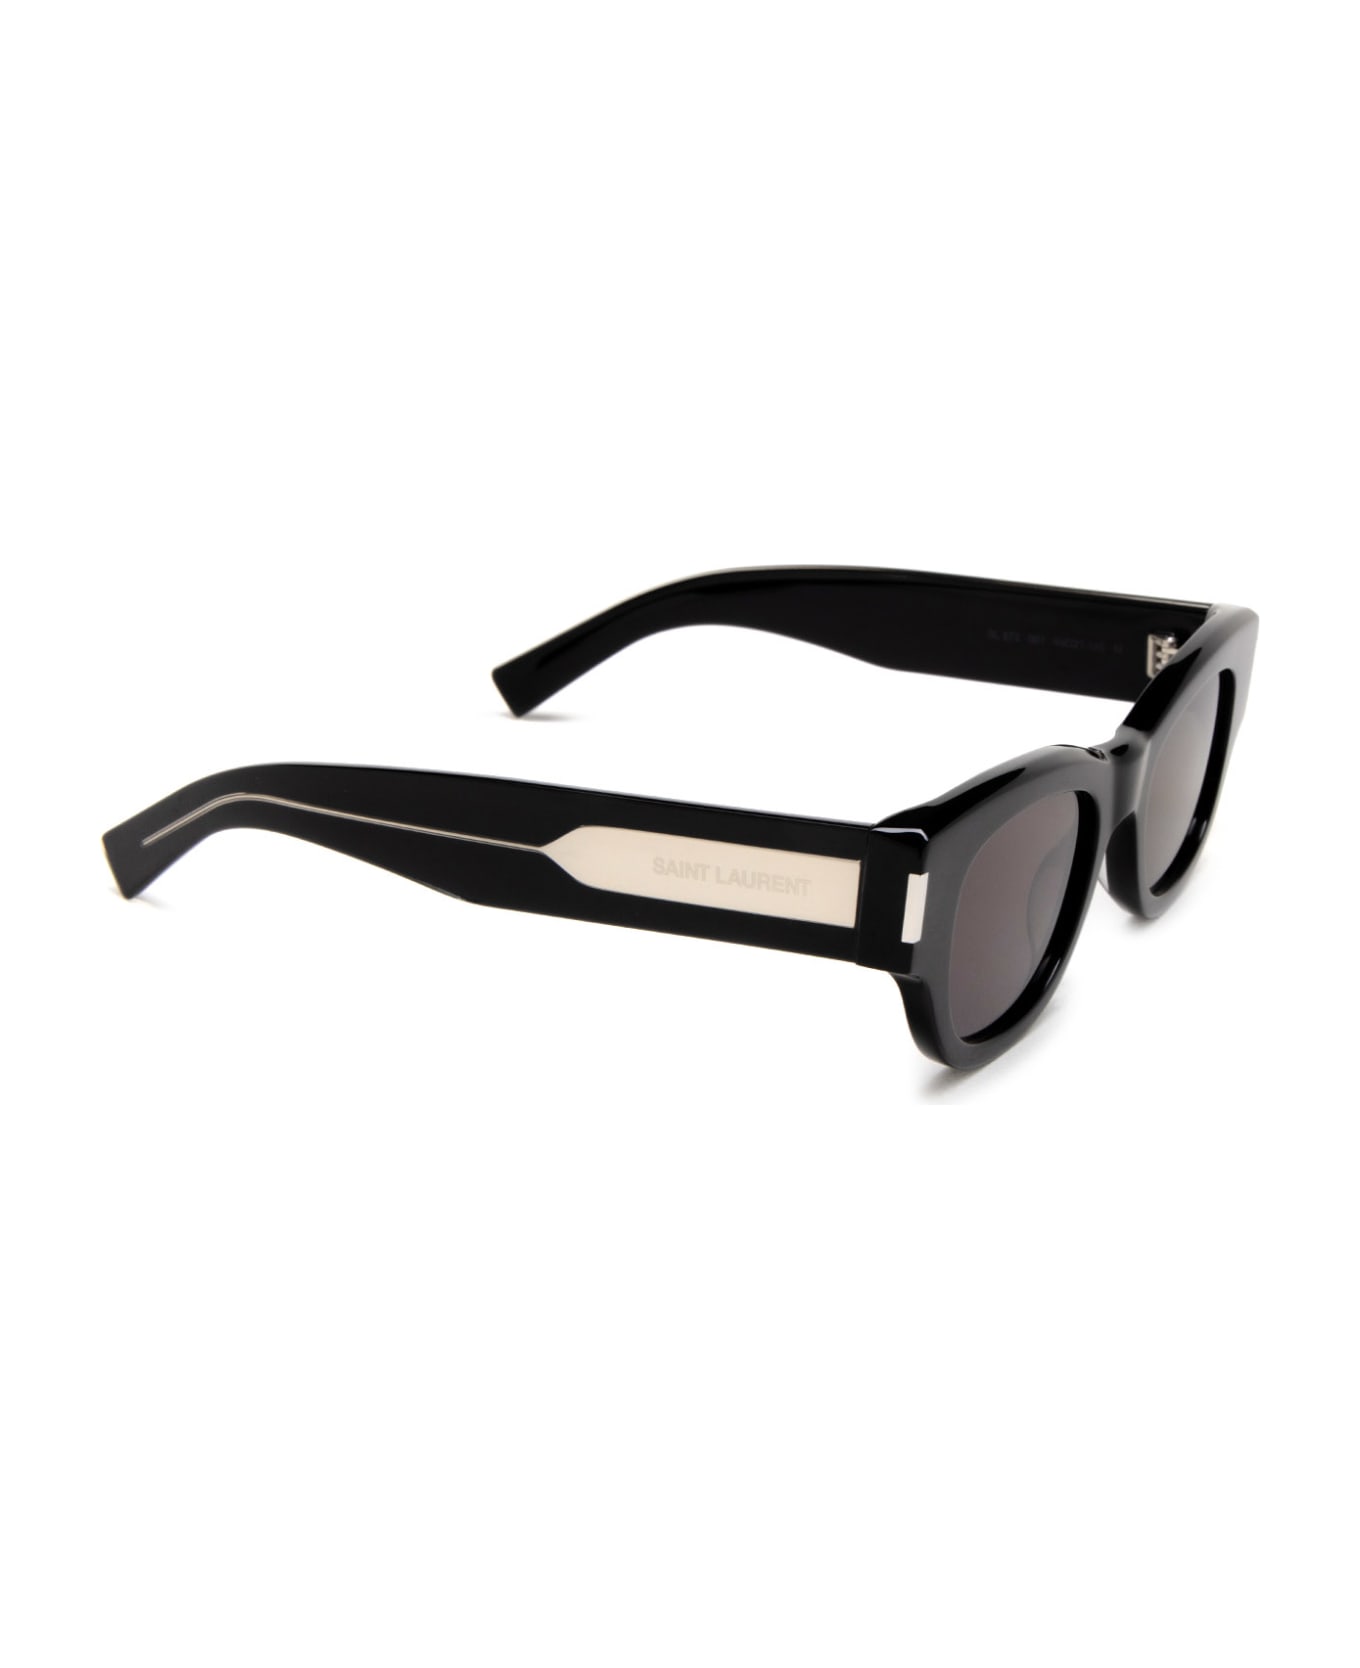 Saint Laurent Eyewear Sl 573 Black Sunglasses - Black